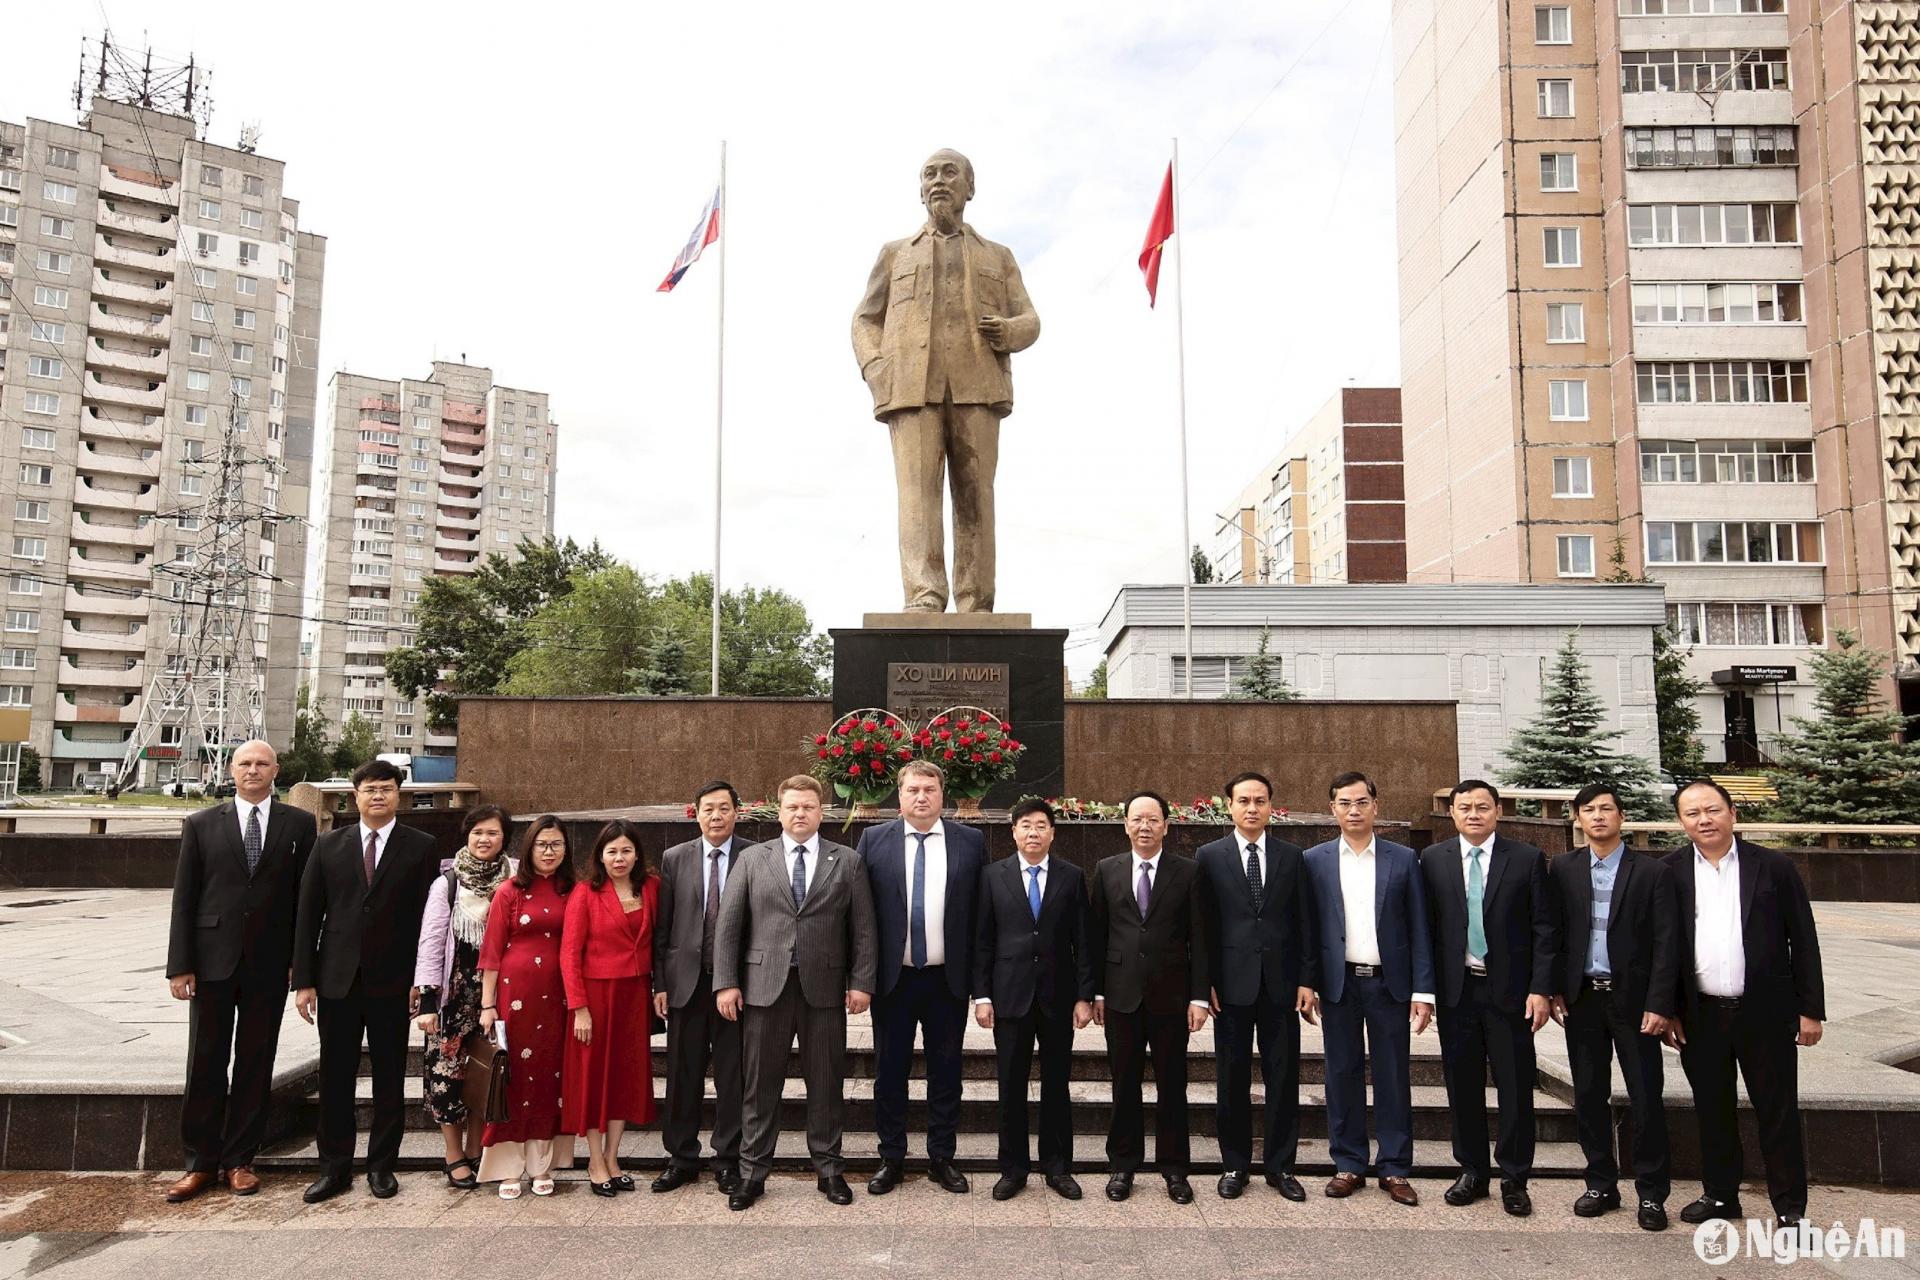 Các đại biểu chụp ảnh lưu niệm tại tượng đài Chủ tịch Hồ Chí Minh ở U-li-a- nốp. Ảnh: Báo Nghệ An